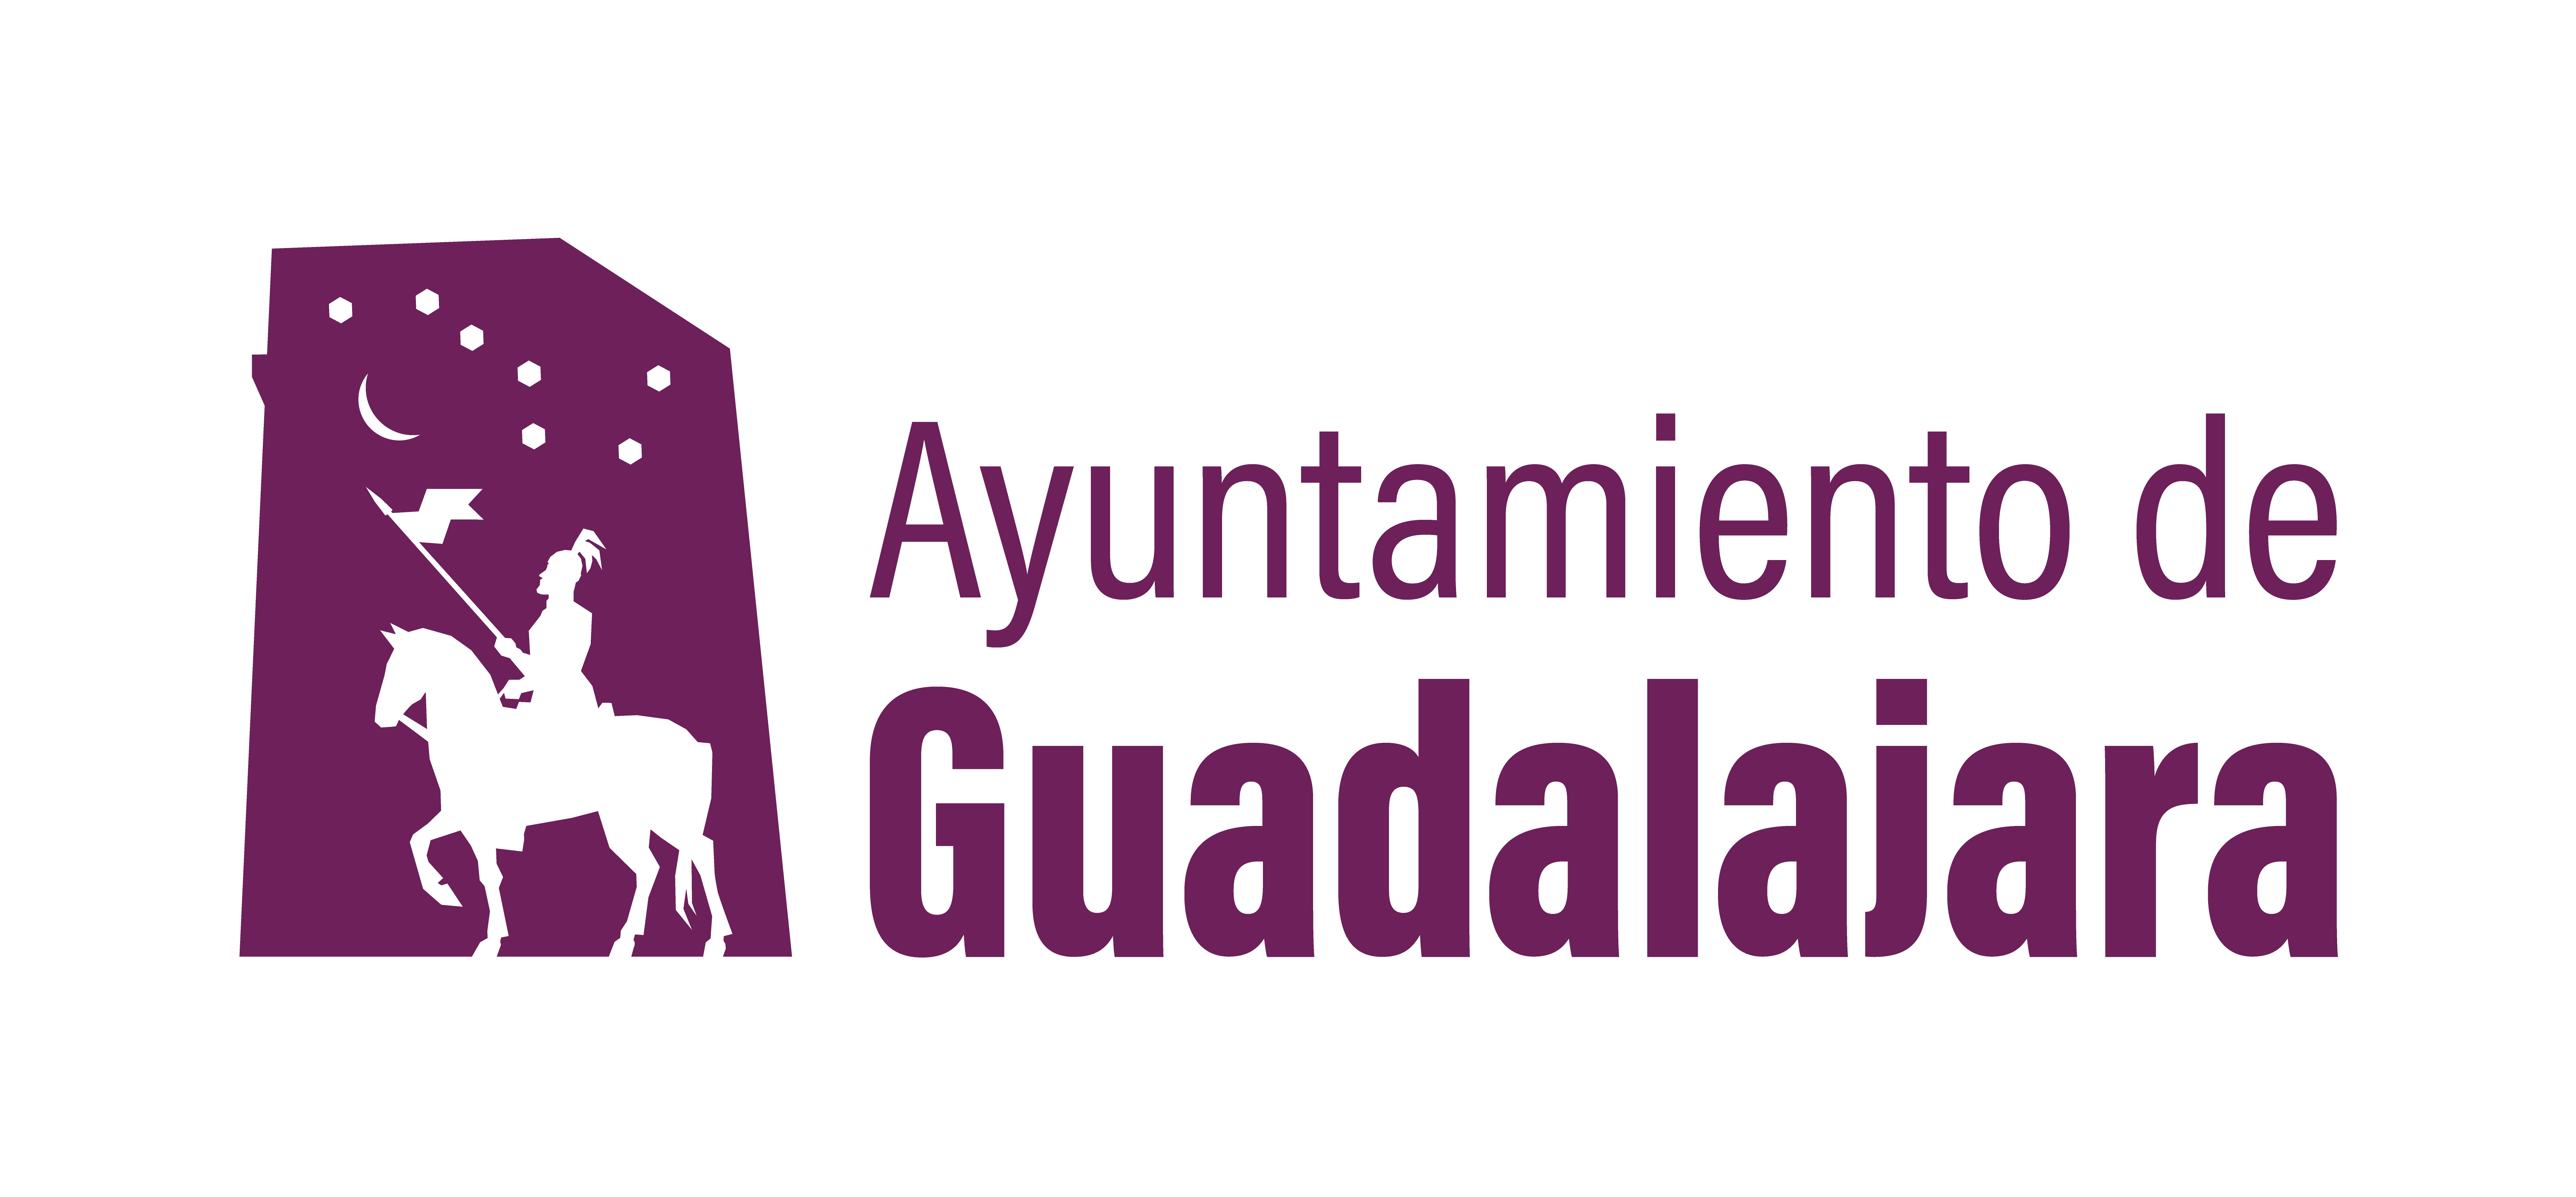 Logotipo ayuntamiento